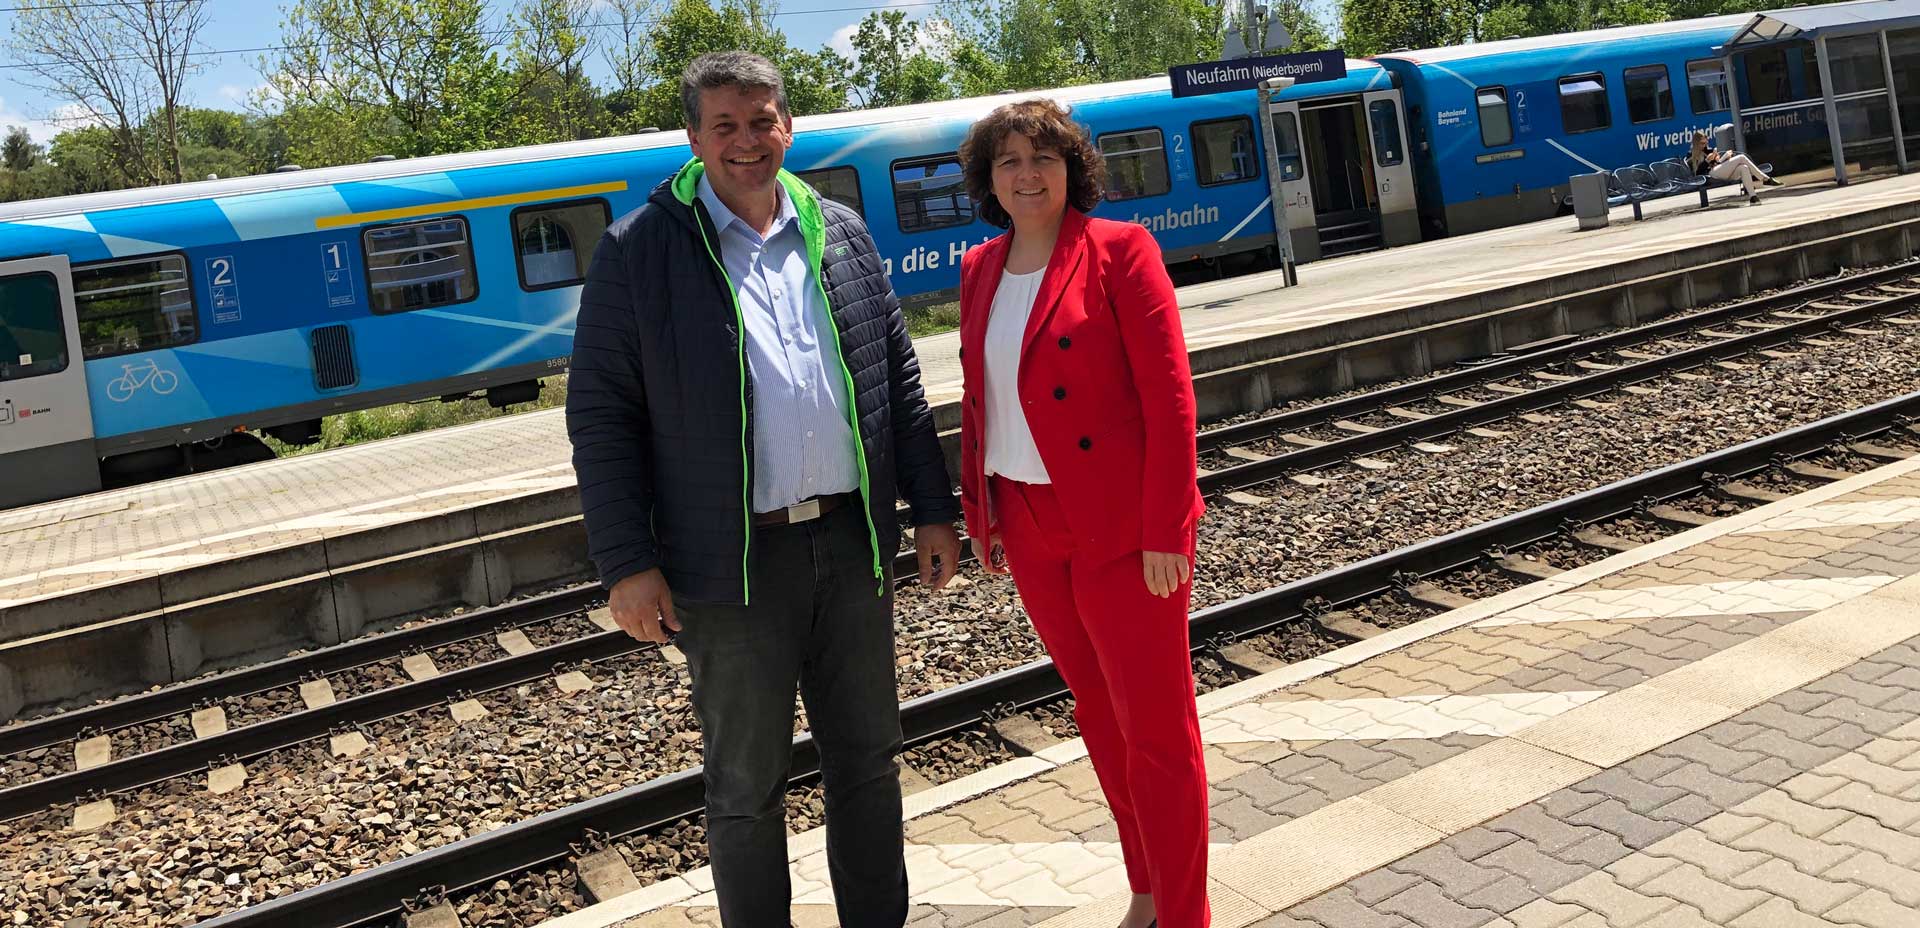 Neufahrns Bürgermeister Peter Forstner und die SPD-Landtagsabgeordnete Ruth Müller am Bahnhof von Neufahrn (Foto: SPD-Niederbayern)